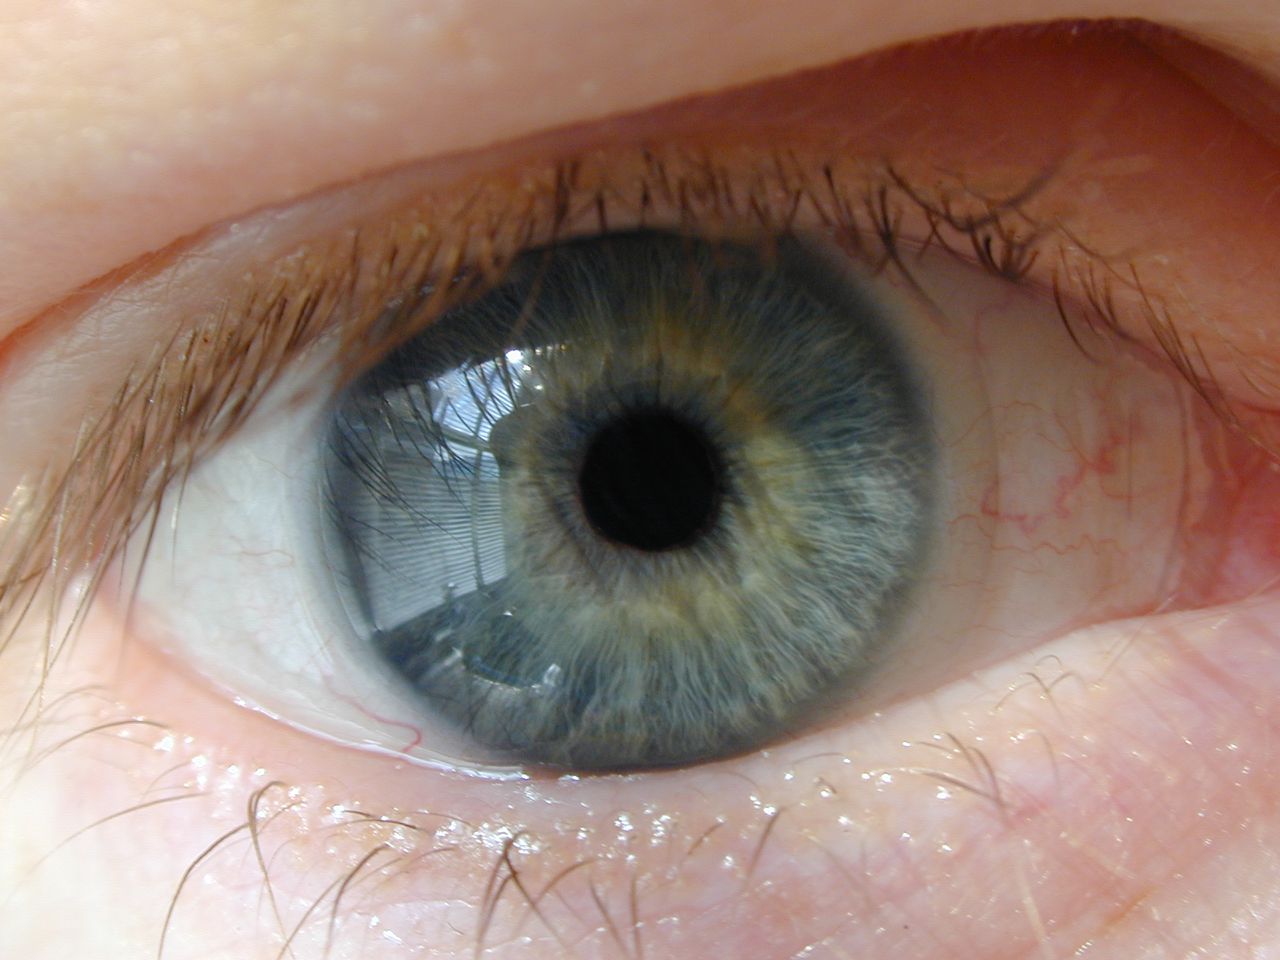 De oogkleur van voortvluchtige daders, of van hoofdloos gevonden lijken, is nauwkeurig uit hun DNA vast te stellen, als hun ogen blauw of bruin zijn.